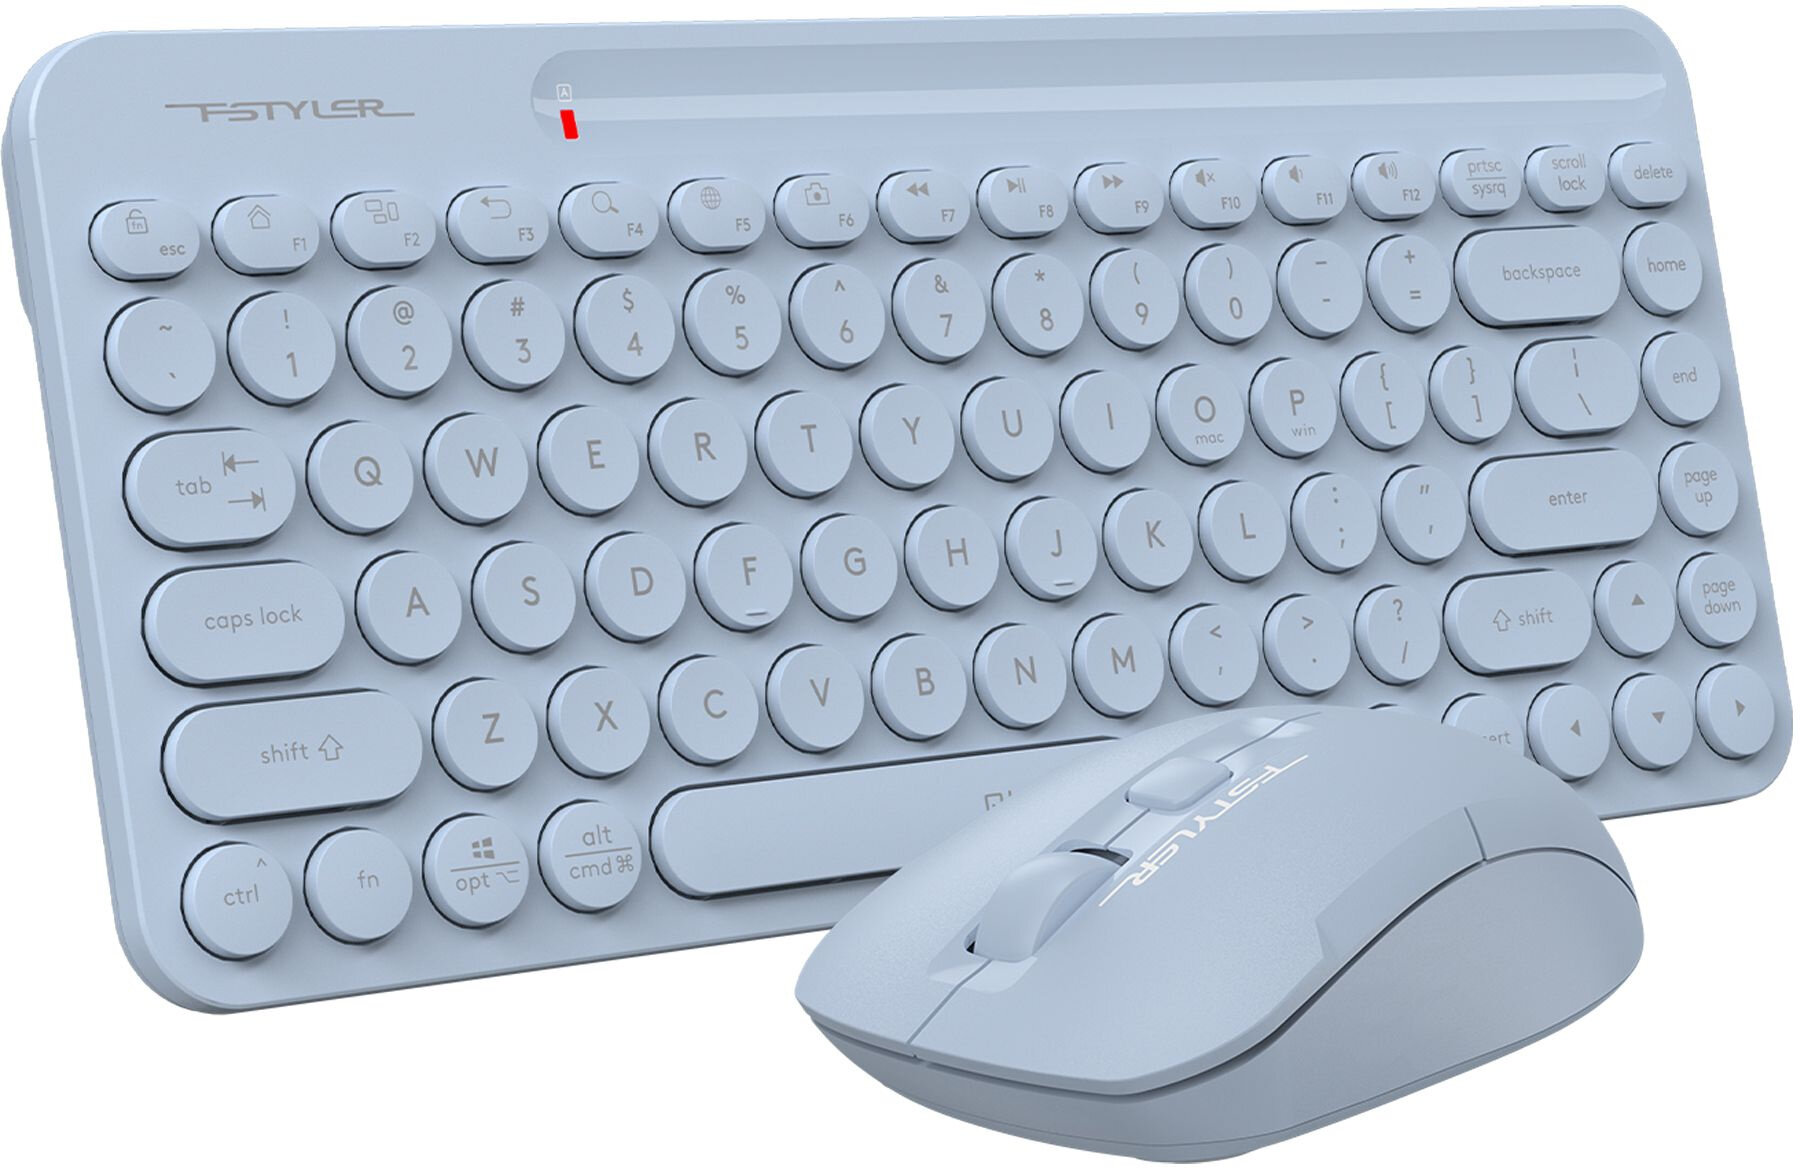 Клавиатура мышь A4Tech Fstyler FG3200 Air клавсиний мышьсиний USB беспроводная slim Multimedia